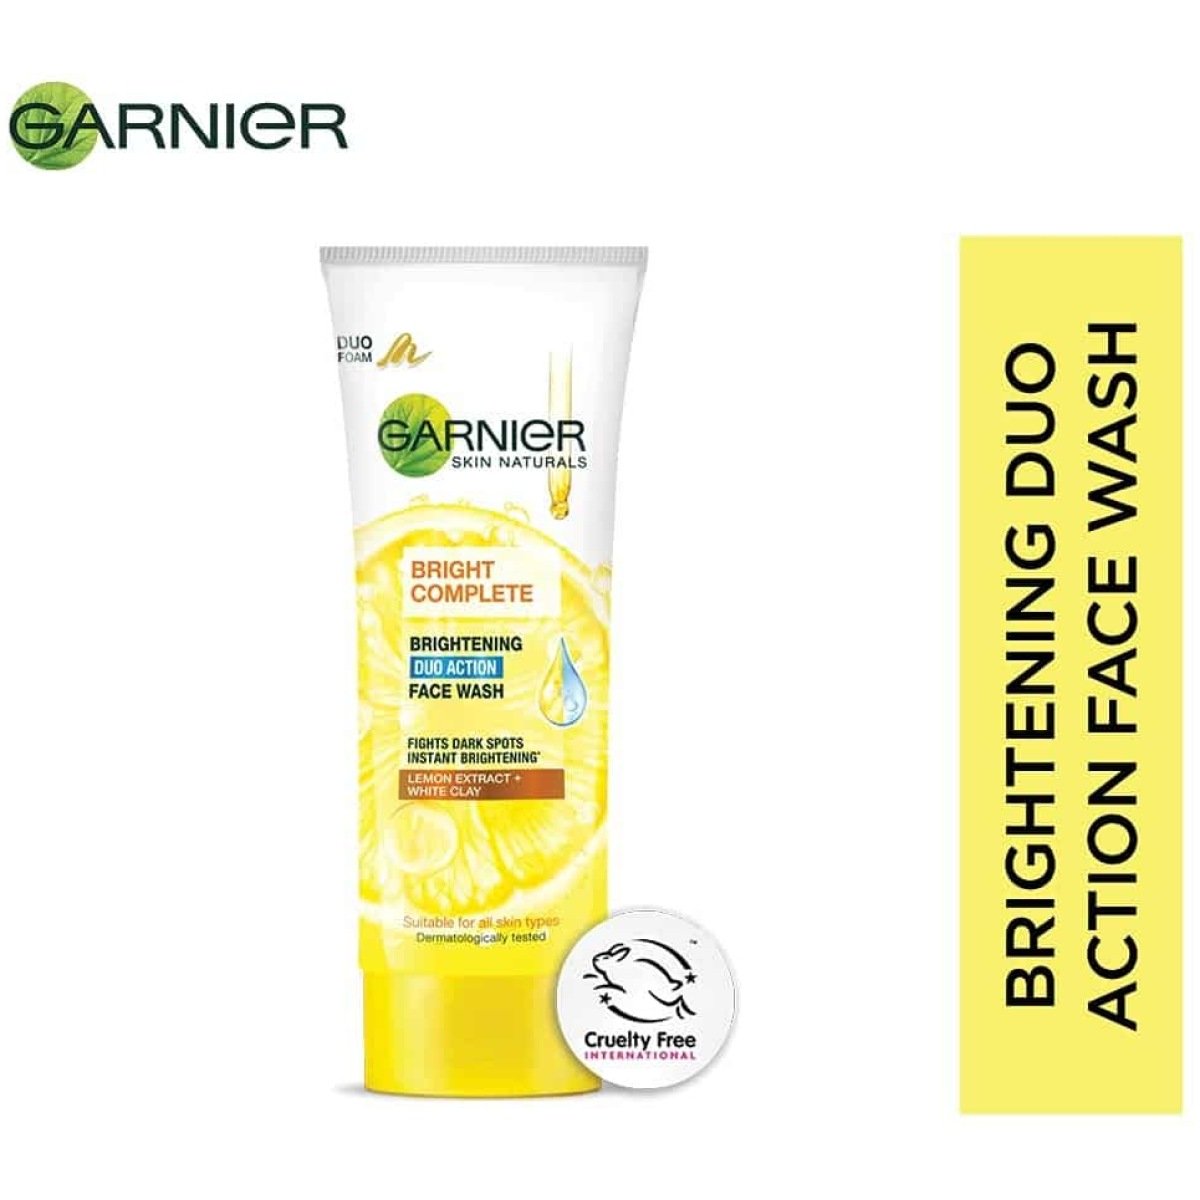  Garnier Skin Naturals Light Complete Duo Action Facewash, 100g